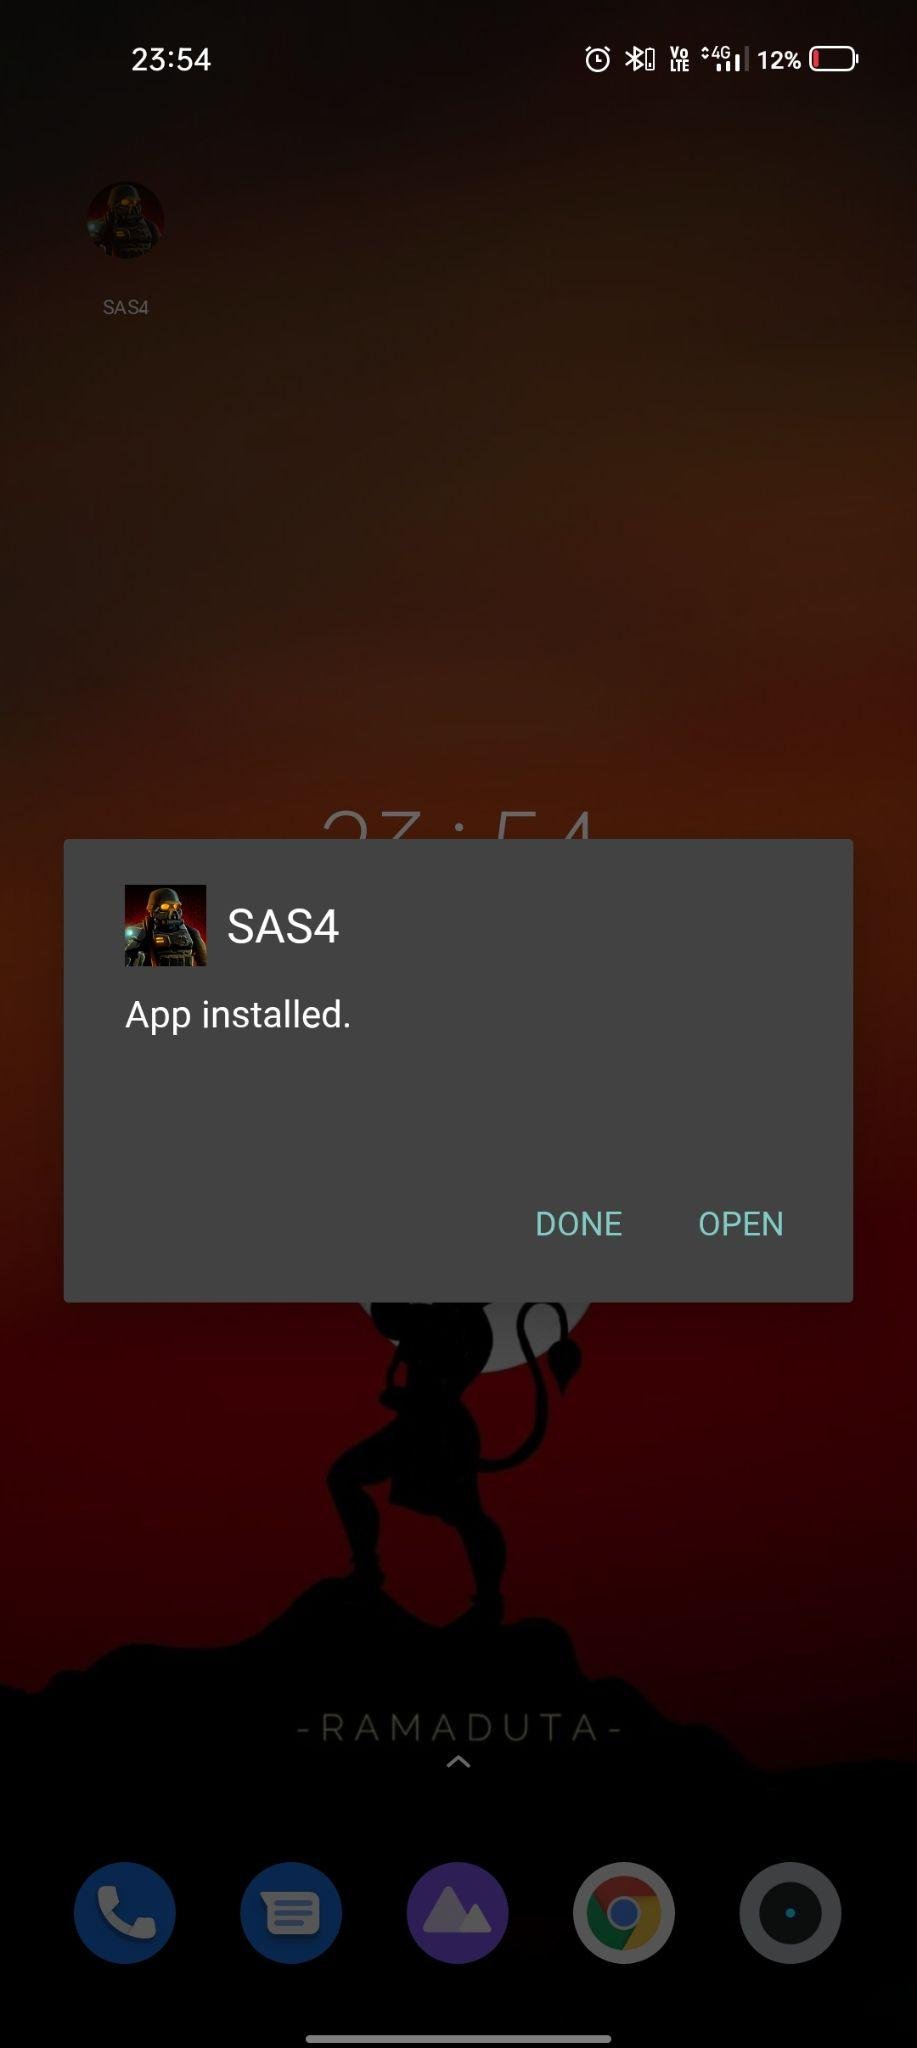 sas4 apk installed